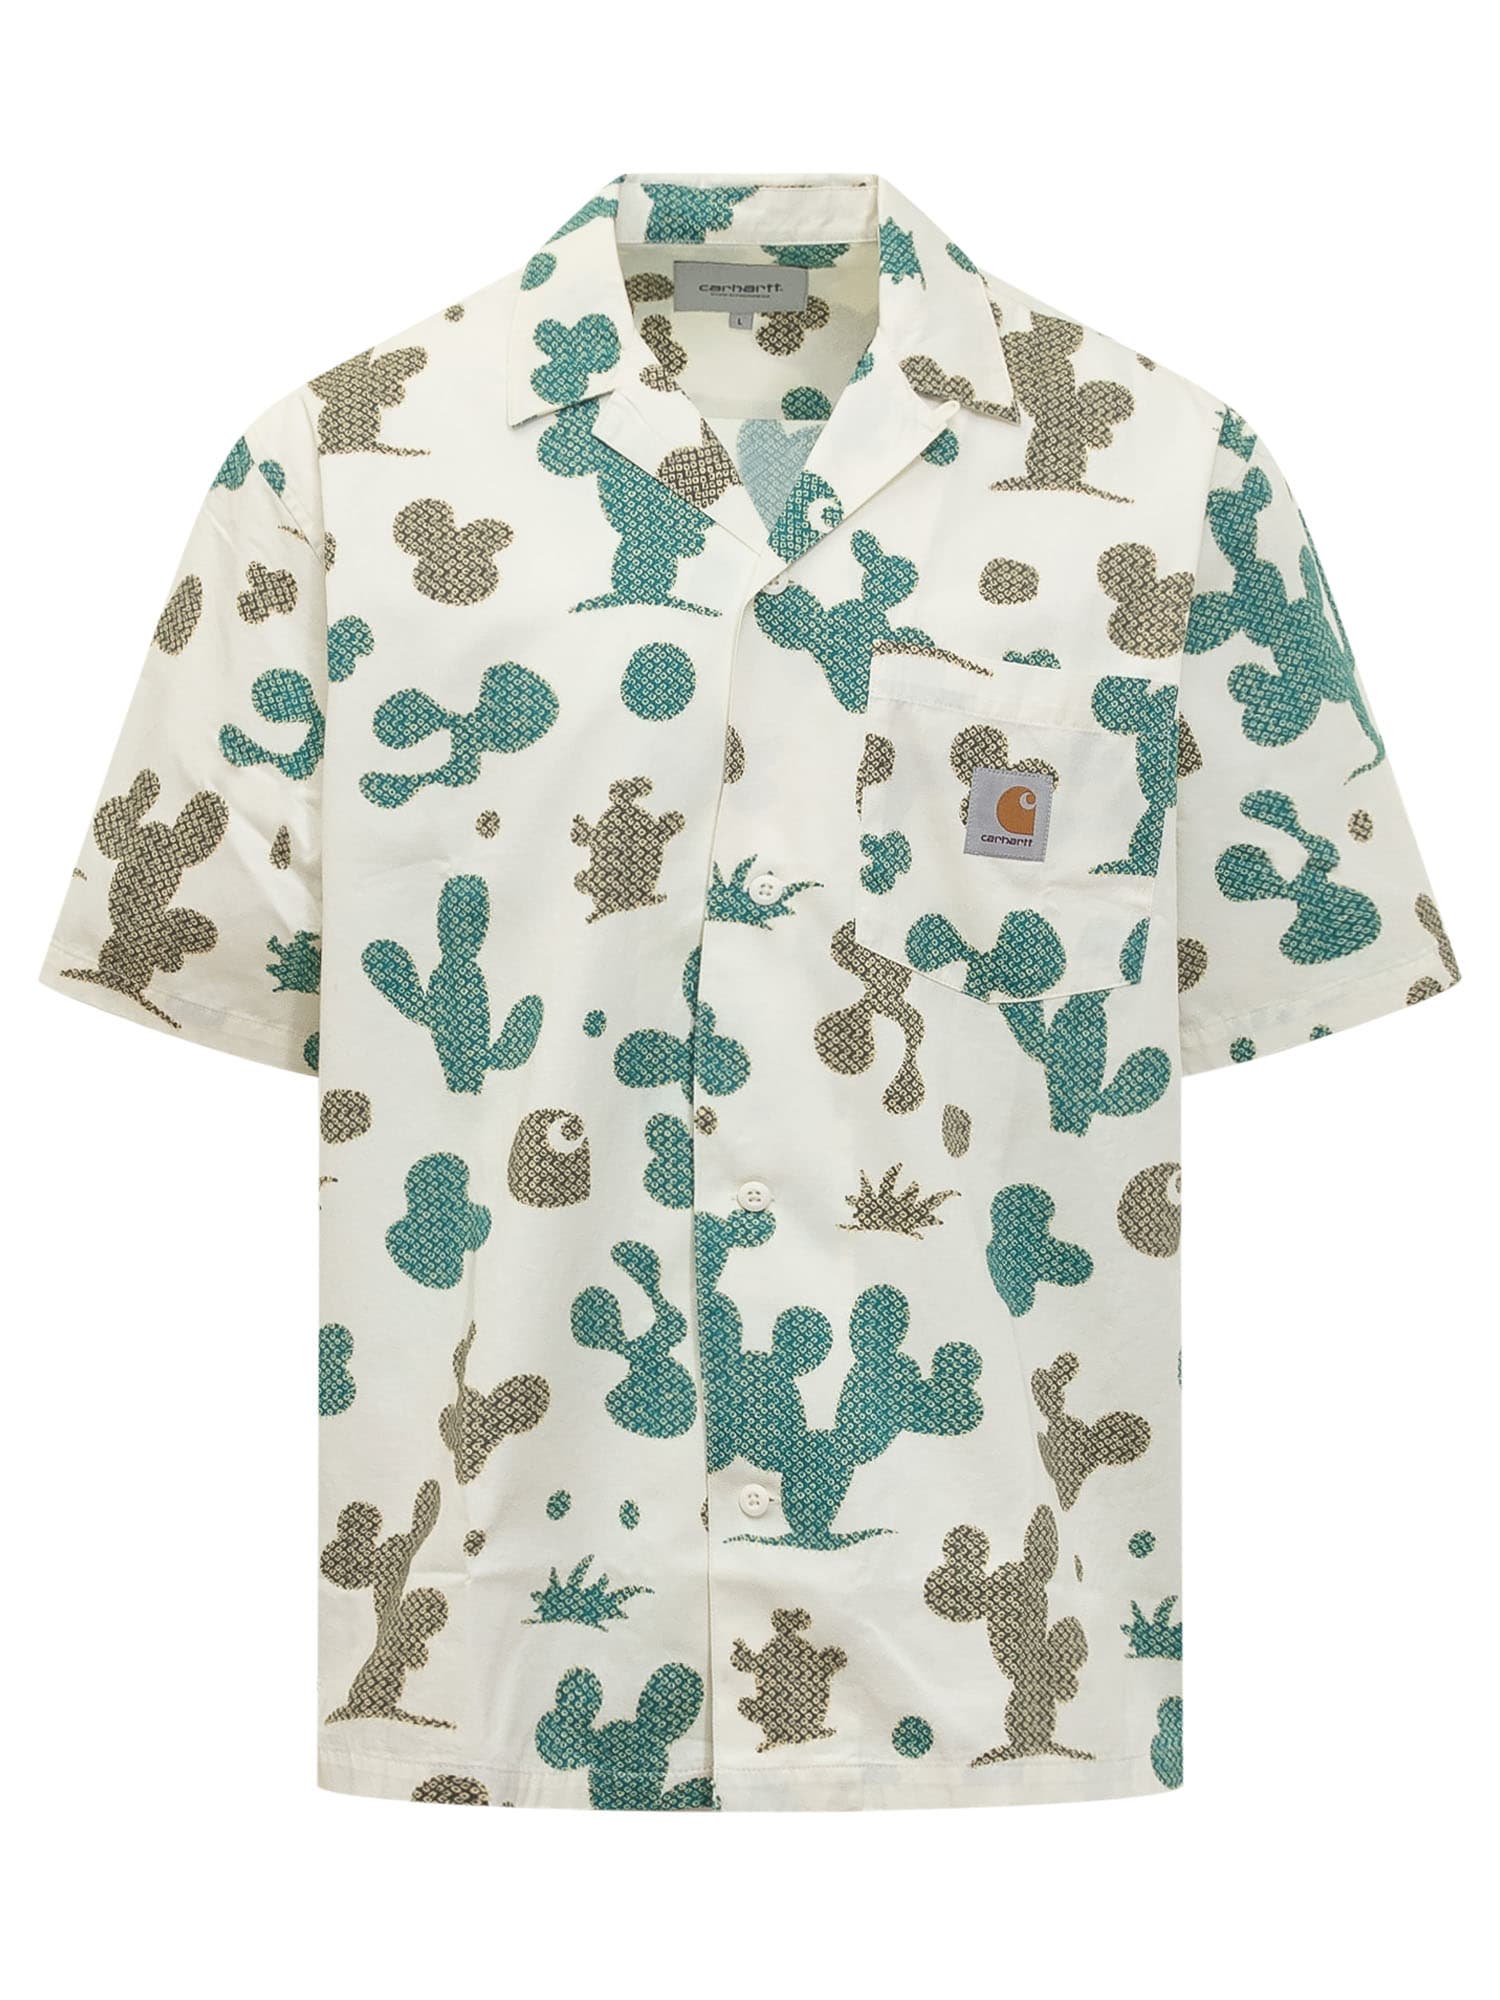 Shop Carhartt Shirt With Cactus Print In Panna